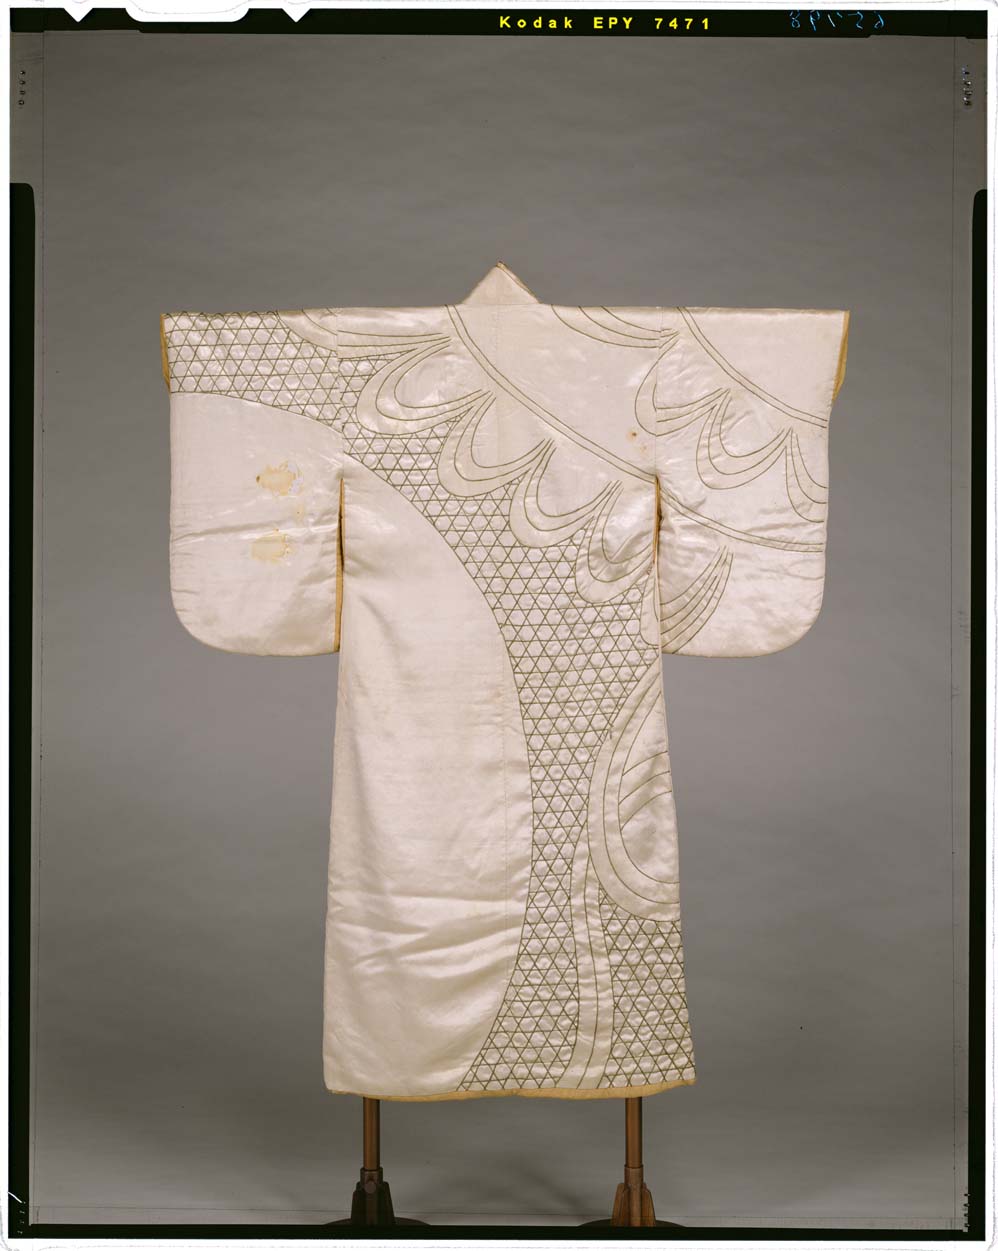 C0065798 白繻子地蛇篭晒布模様振袖 - 東京国立博物館 画像検索